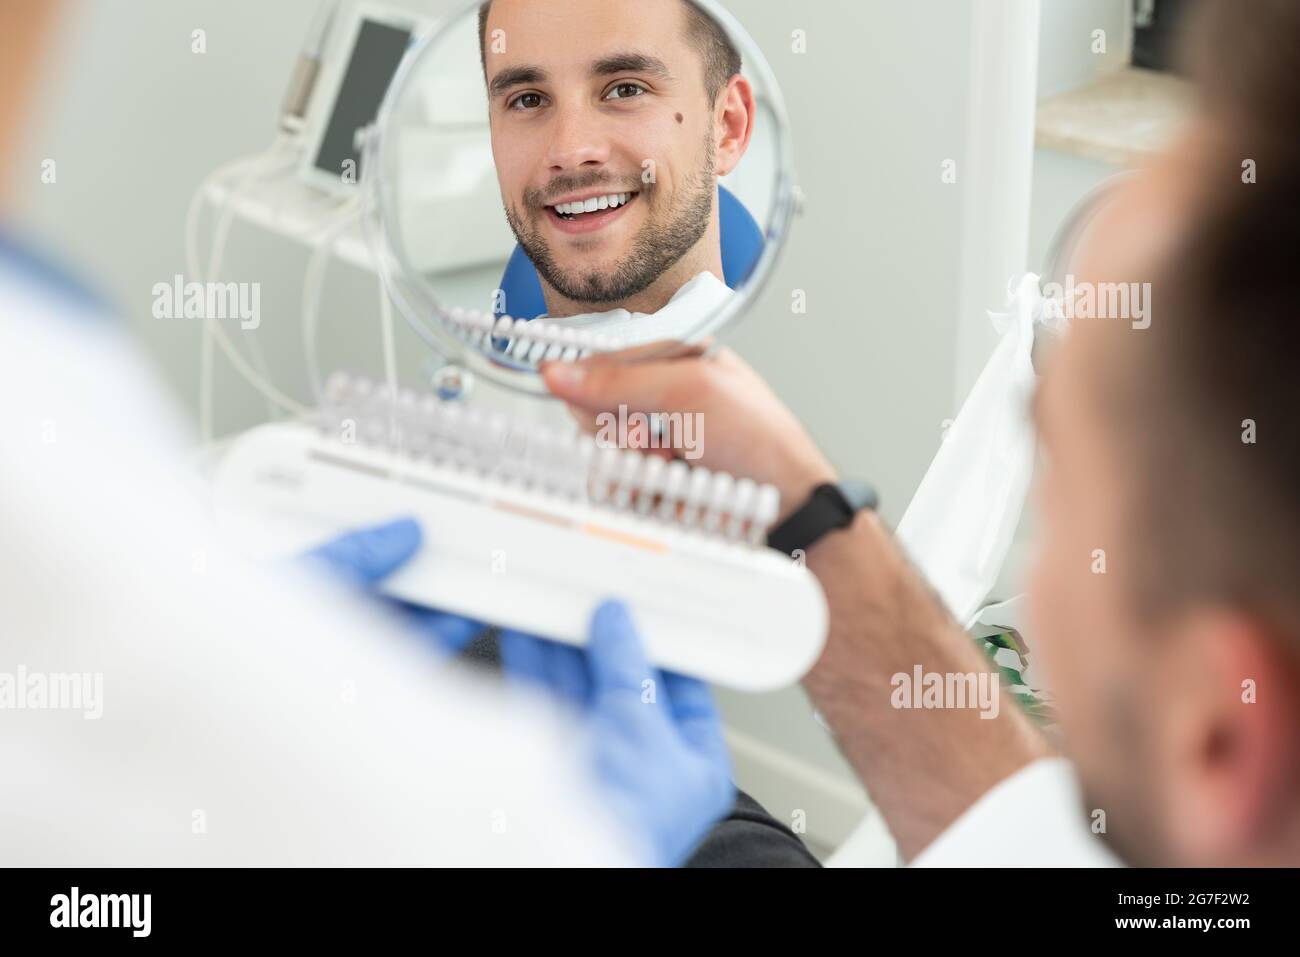 Bel giovane in odontostomatologia clinica. Un sano lo sbiancamento dei denti. Foto Stock